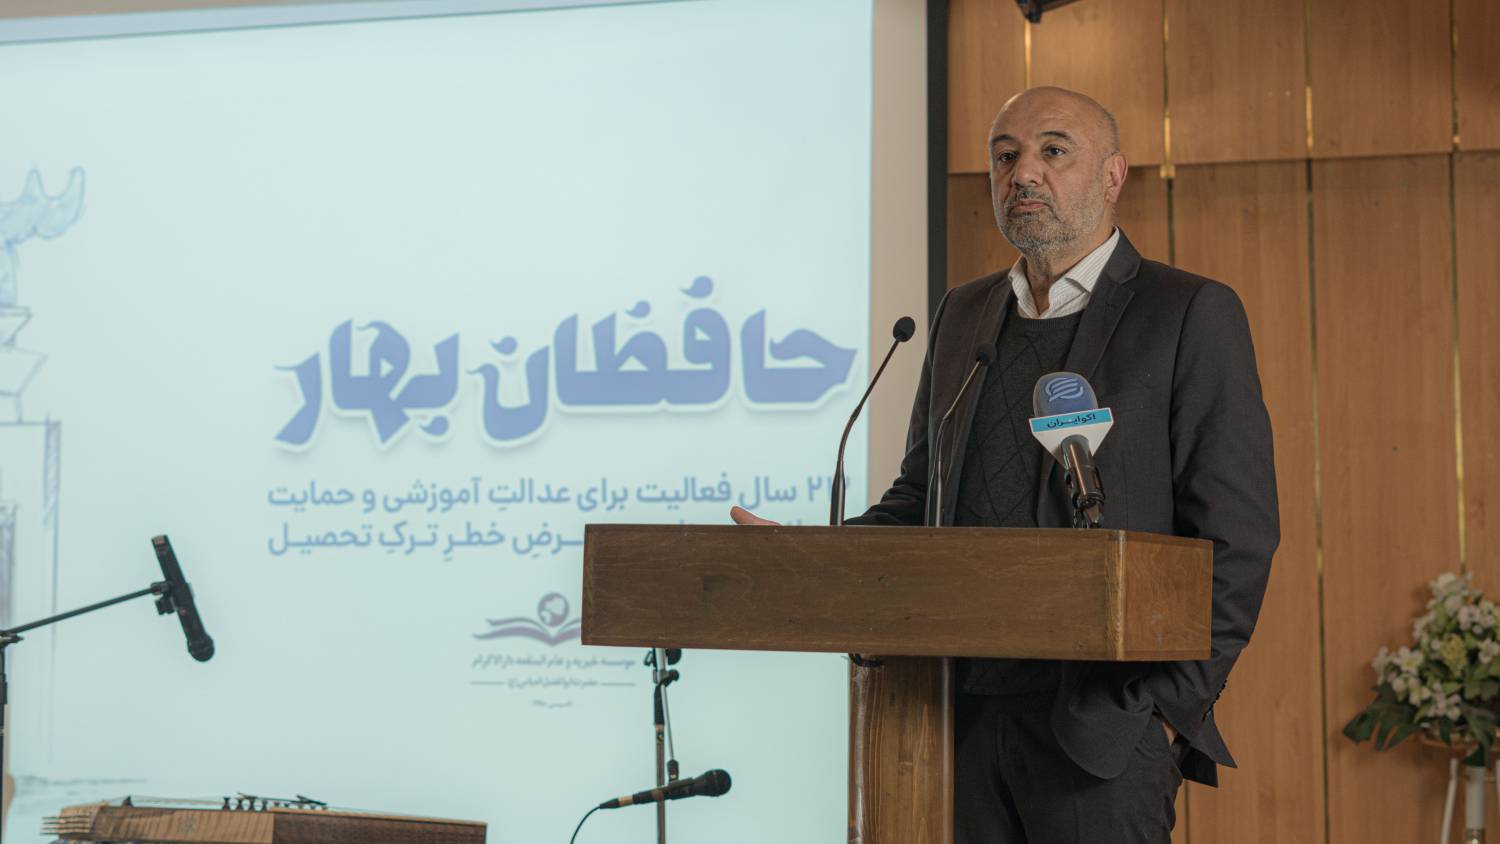 احمد میدری در همایش با حافظان بهار